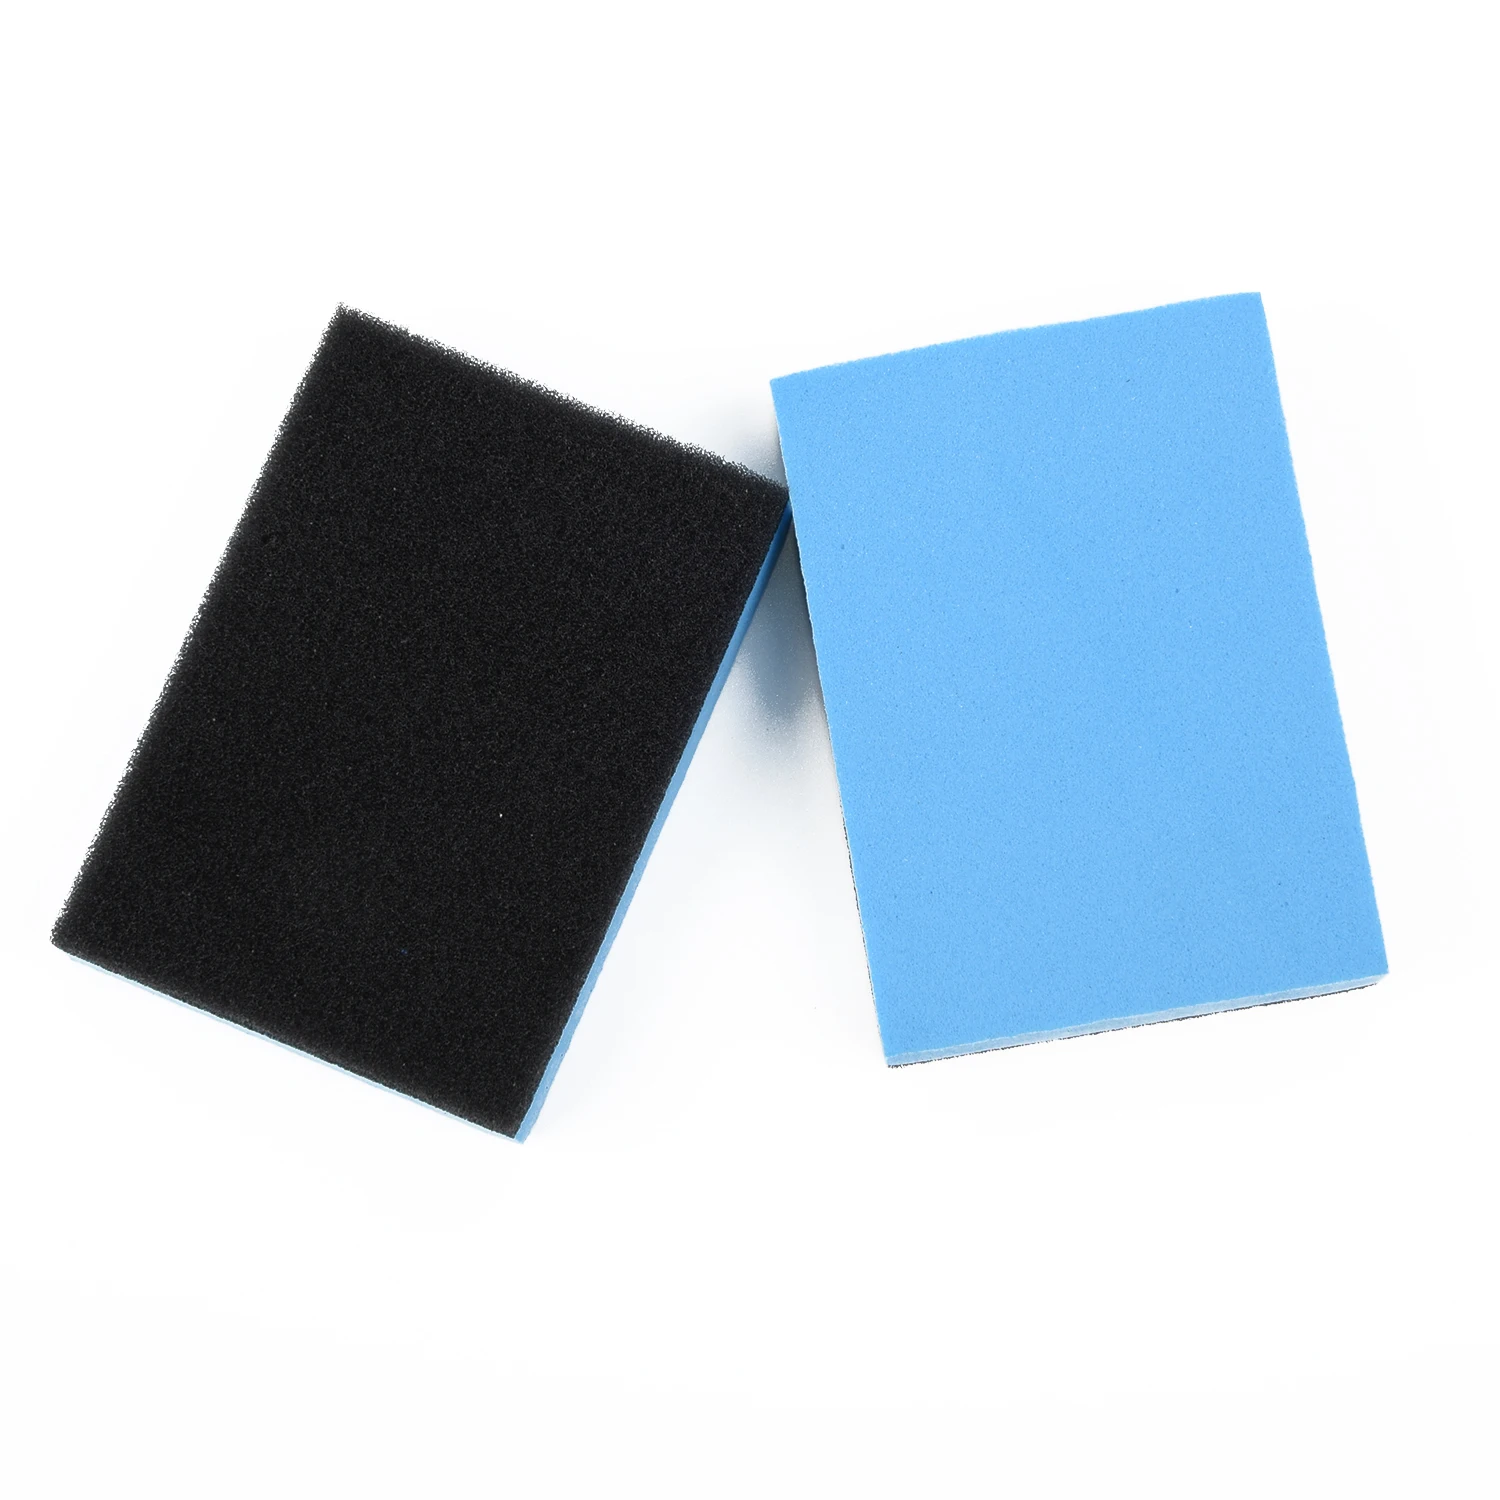 Инструмент для очистки автомобиля Губка Pad стекло воск синий+ черное керамическое покрытие 7,5*5*1,5 см EVA аппликатор Запчасти Аксессуары